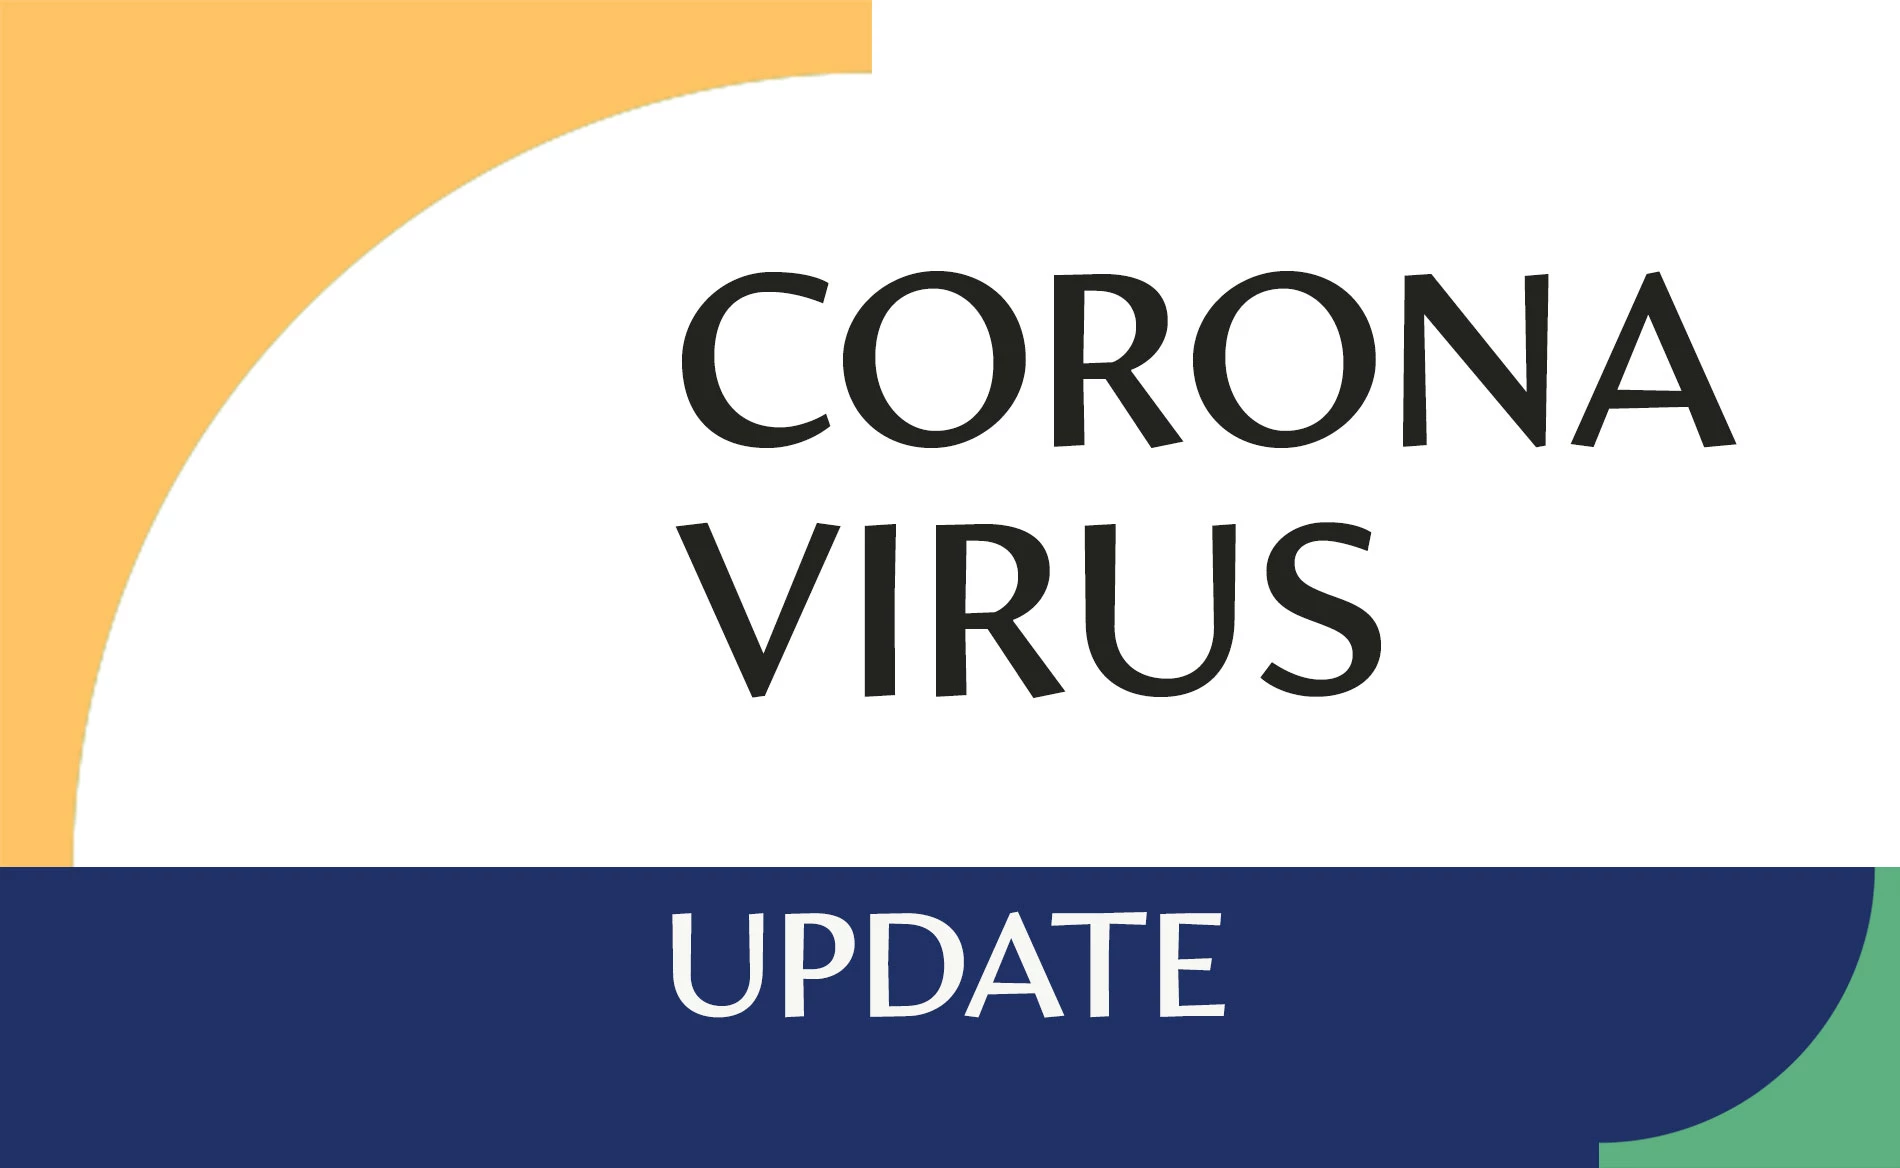 Mise à jour à propos du coronavirus